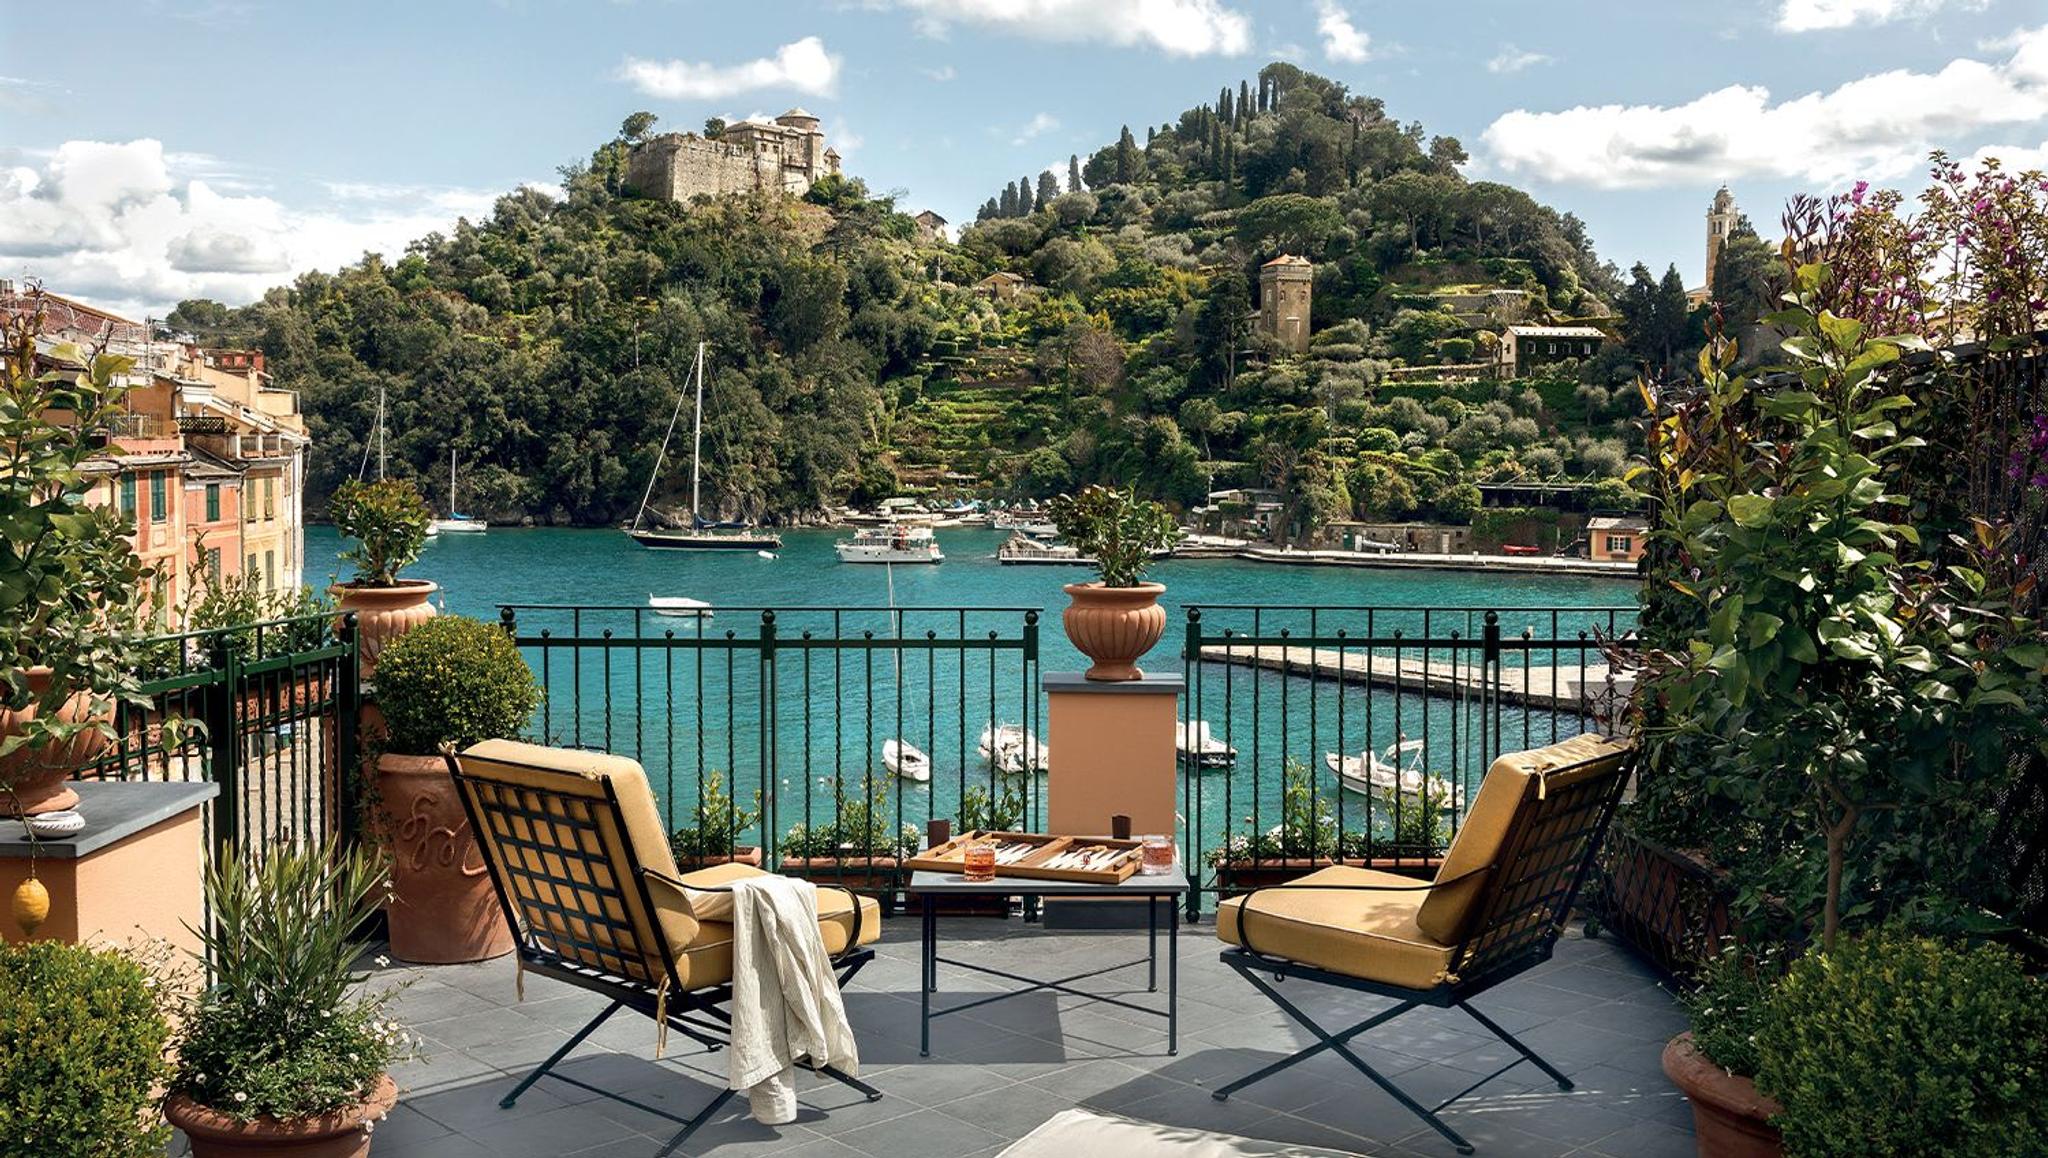 Splendido Mare: Charm and Design in Portofino